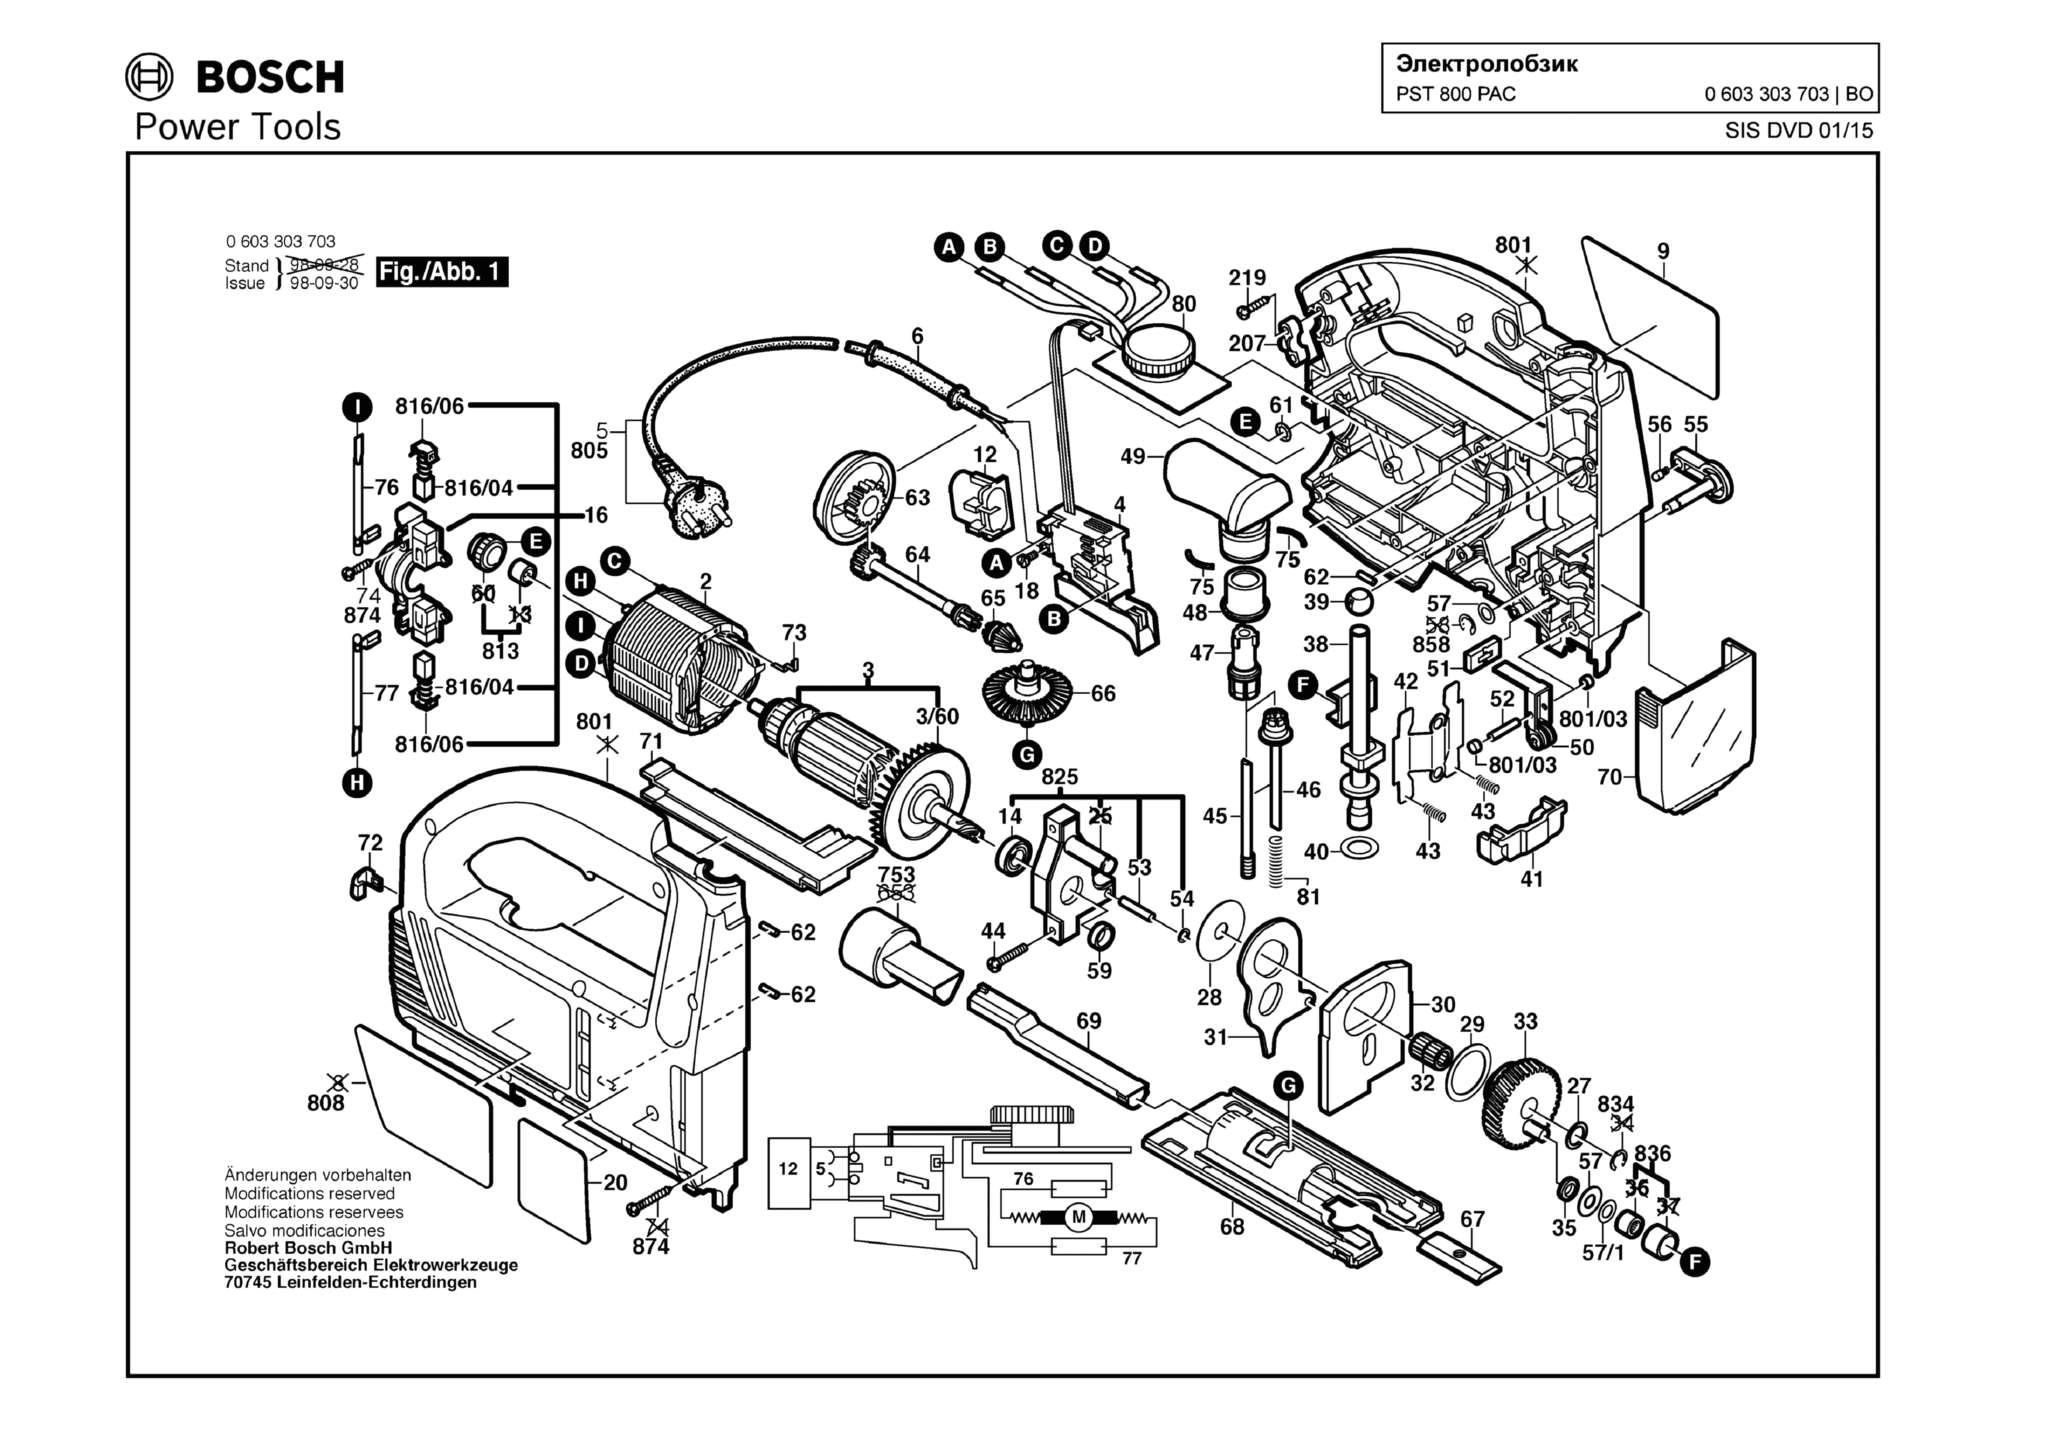 Запчасти, схема и деталировка Bosch PST 800 PAC (ТИП 0603303703)